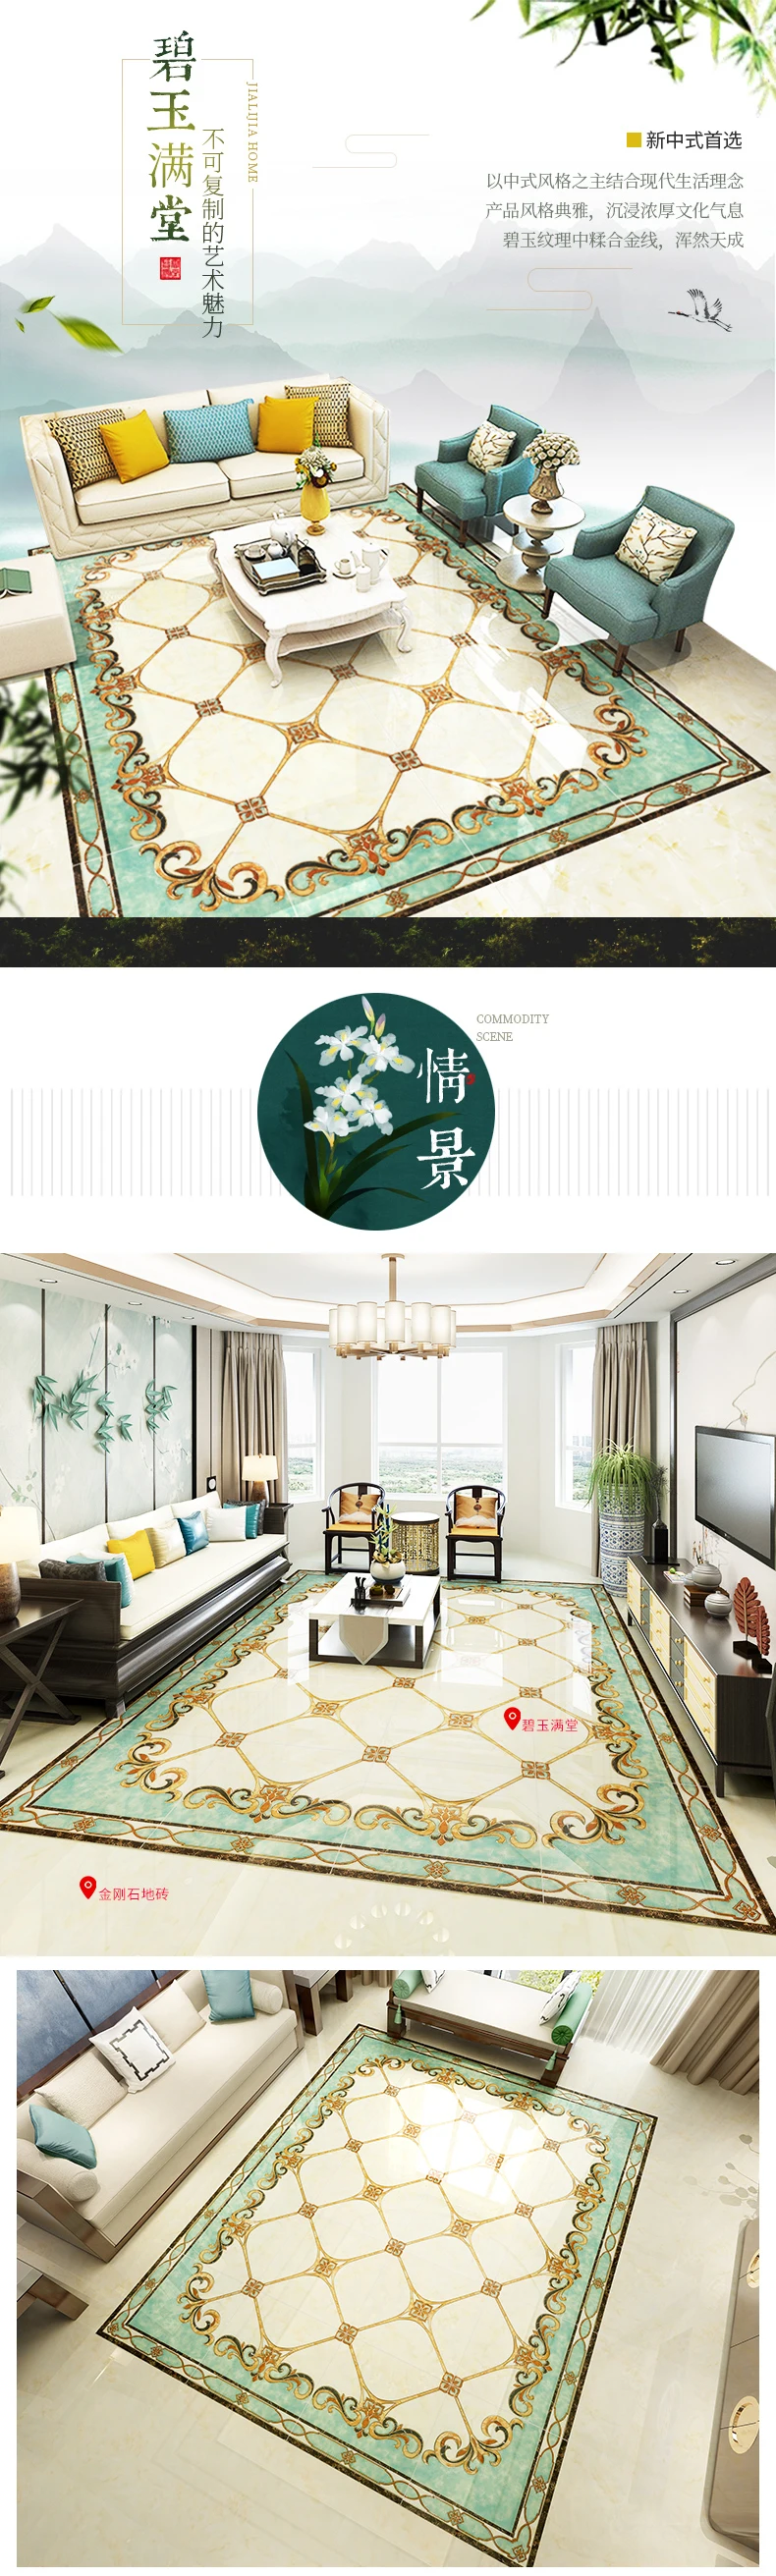 2020 New arrival luxury ceramic carpet floor tile for living room